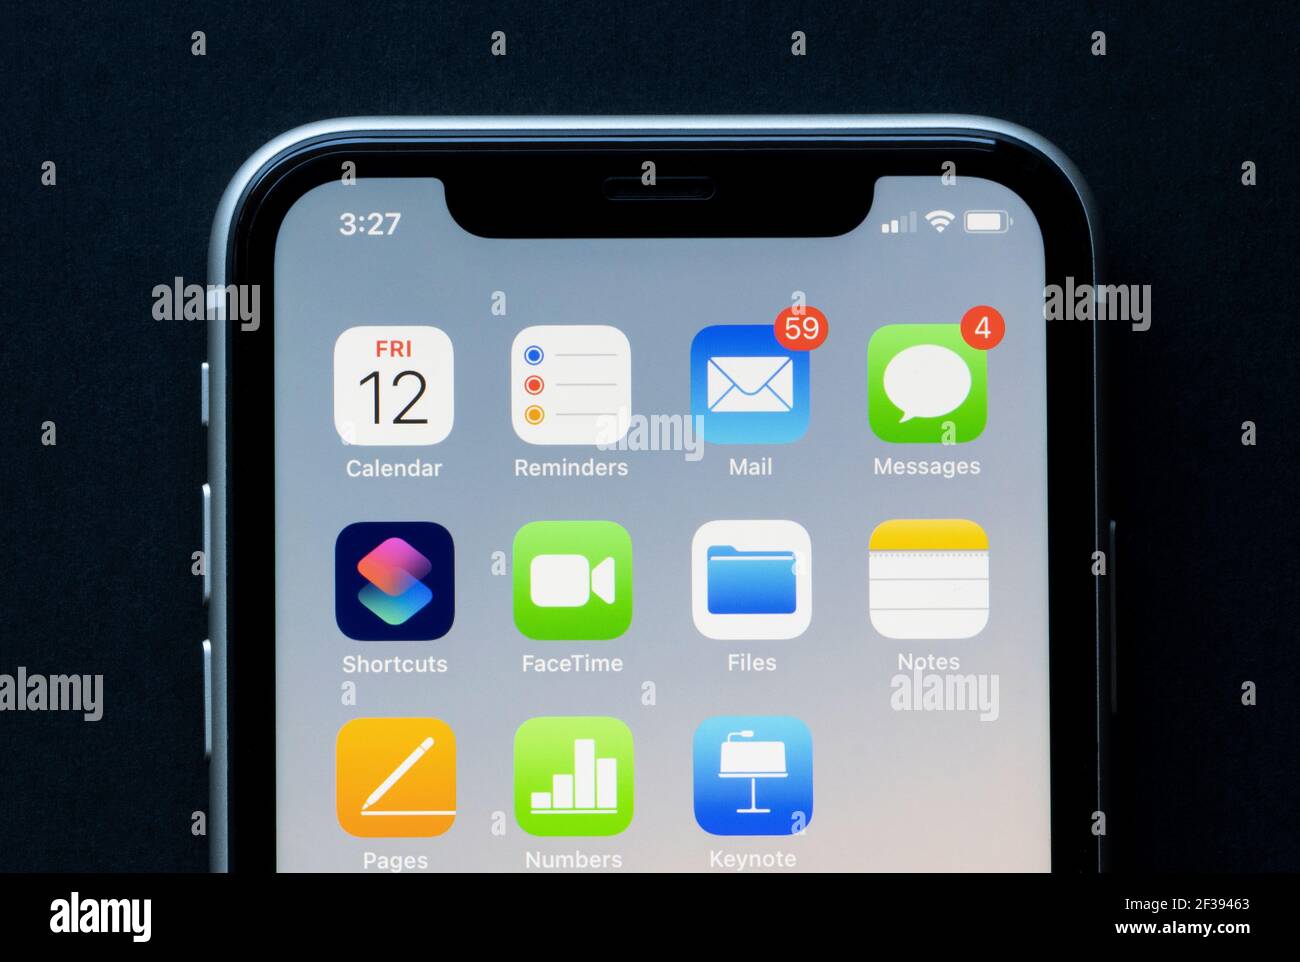 Produktivitäts-Apps von Apple sind auf einem iPhone zu sehen - Kalender, Erinnerungen, Mail, Nachrichten, Verknüpfungen, FaceTime, Dateien, Notizen, Seiten, Zahlen, Keynotes. Stockfoto